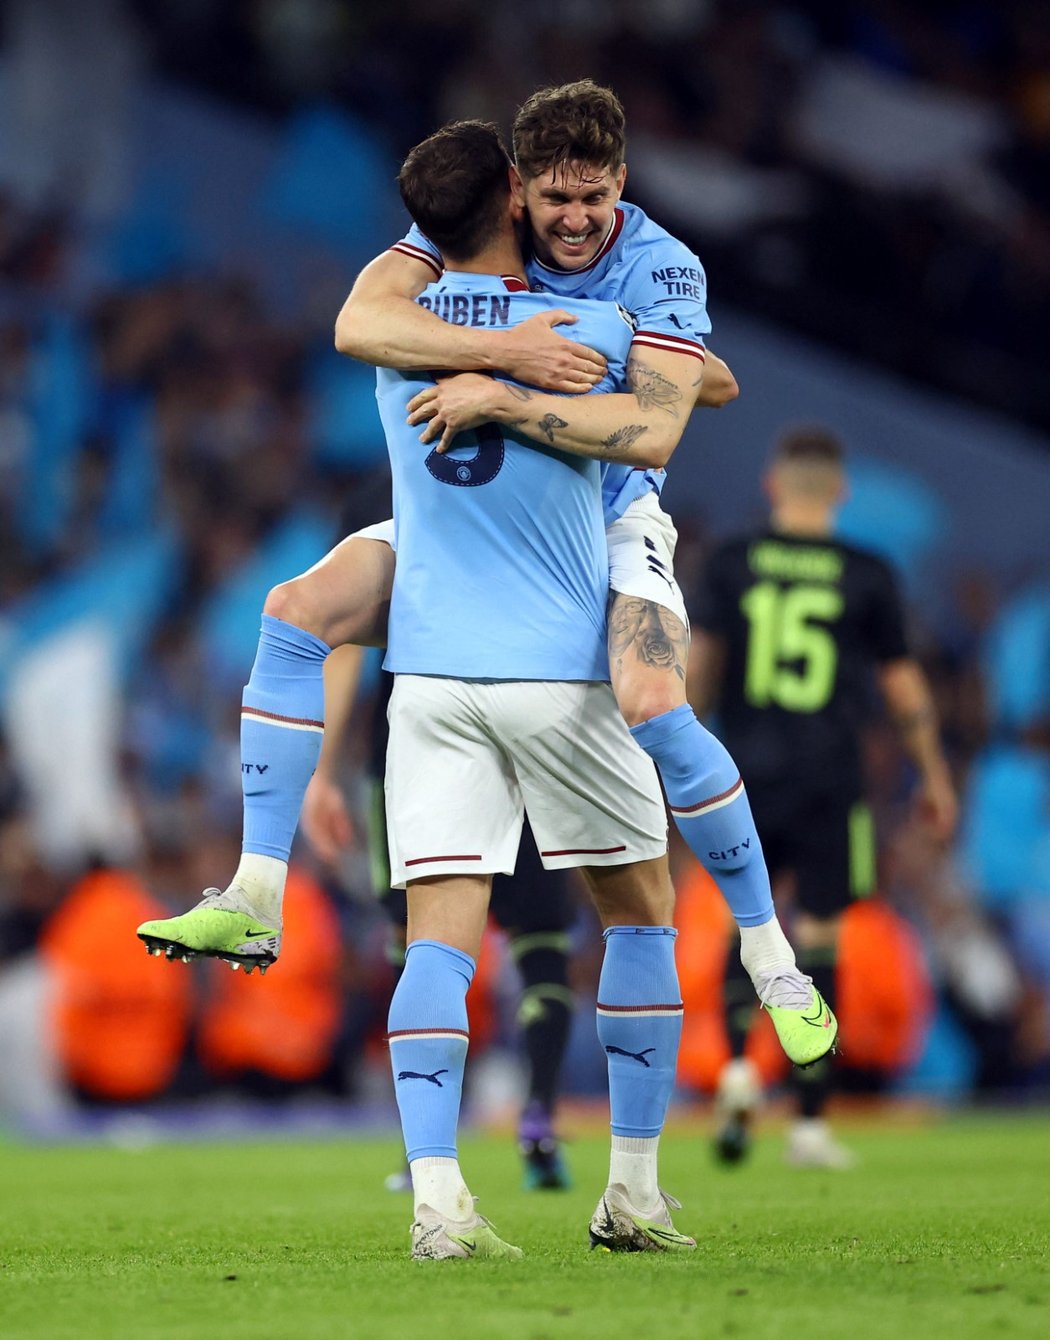 Obrovská radost hráčů City po triumfu nad Realem